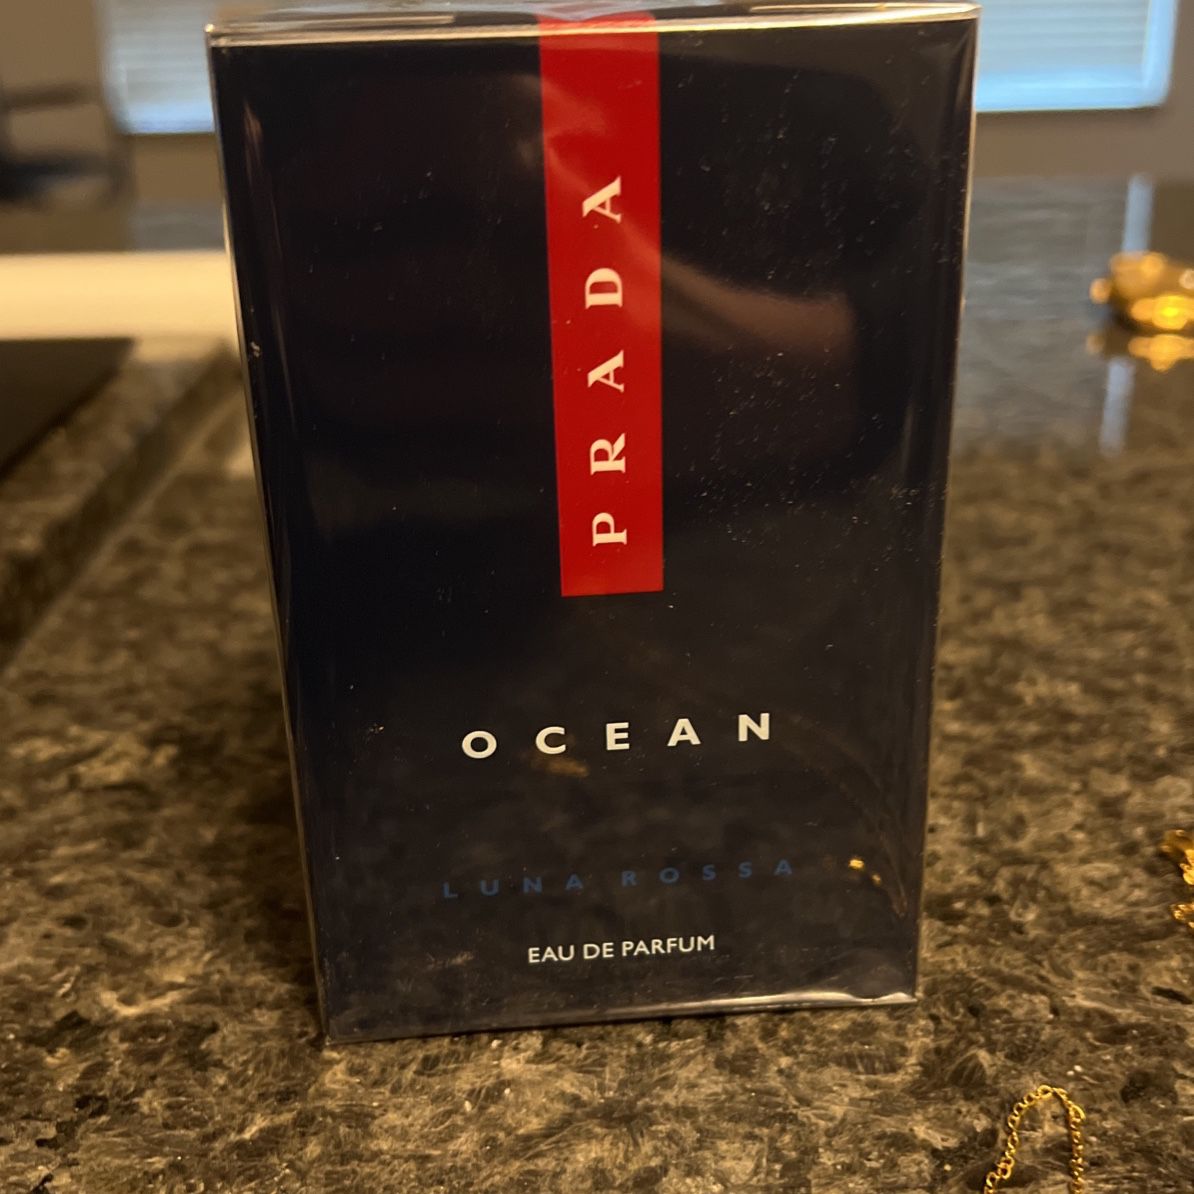 Prada Ocean Luna Rossa Eau De Parfum